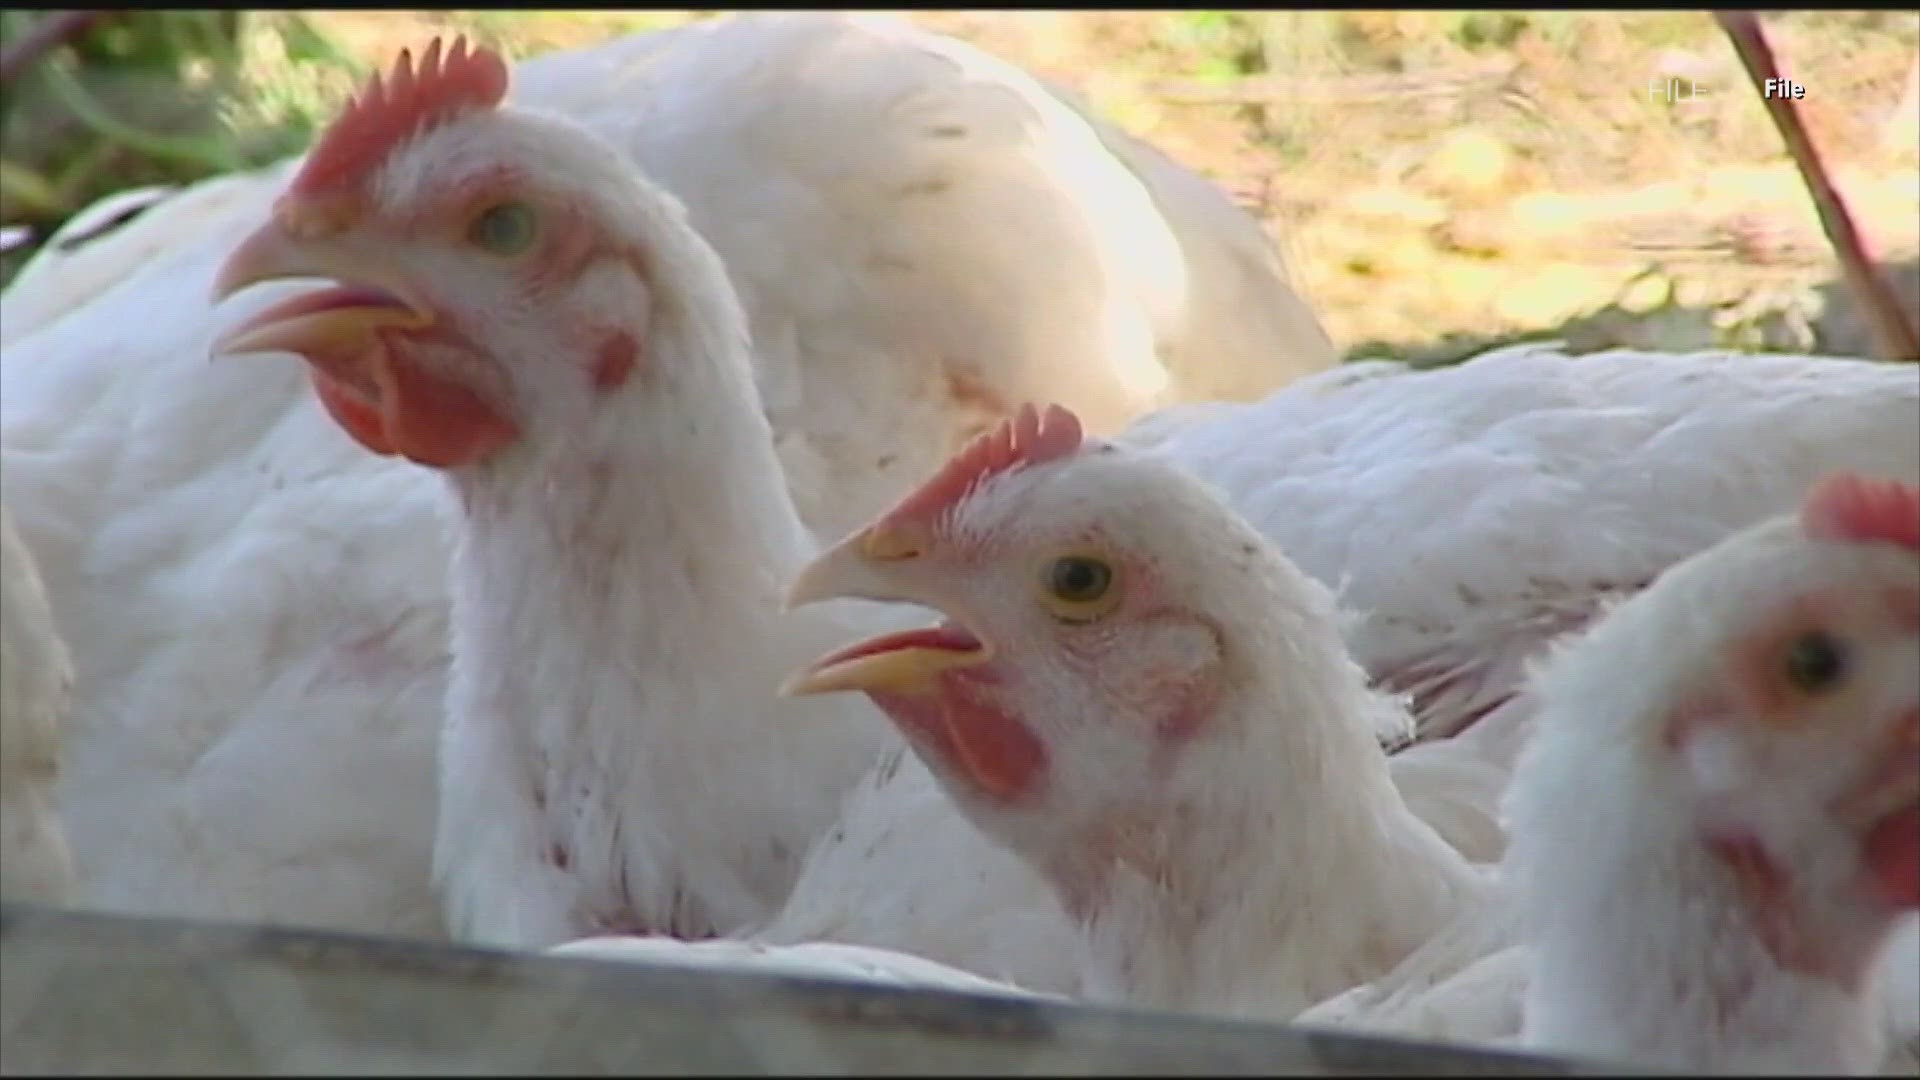 Texas confirms first case of Avian Influenza in mammals